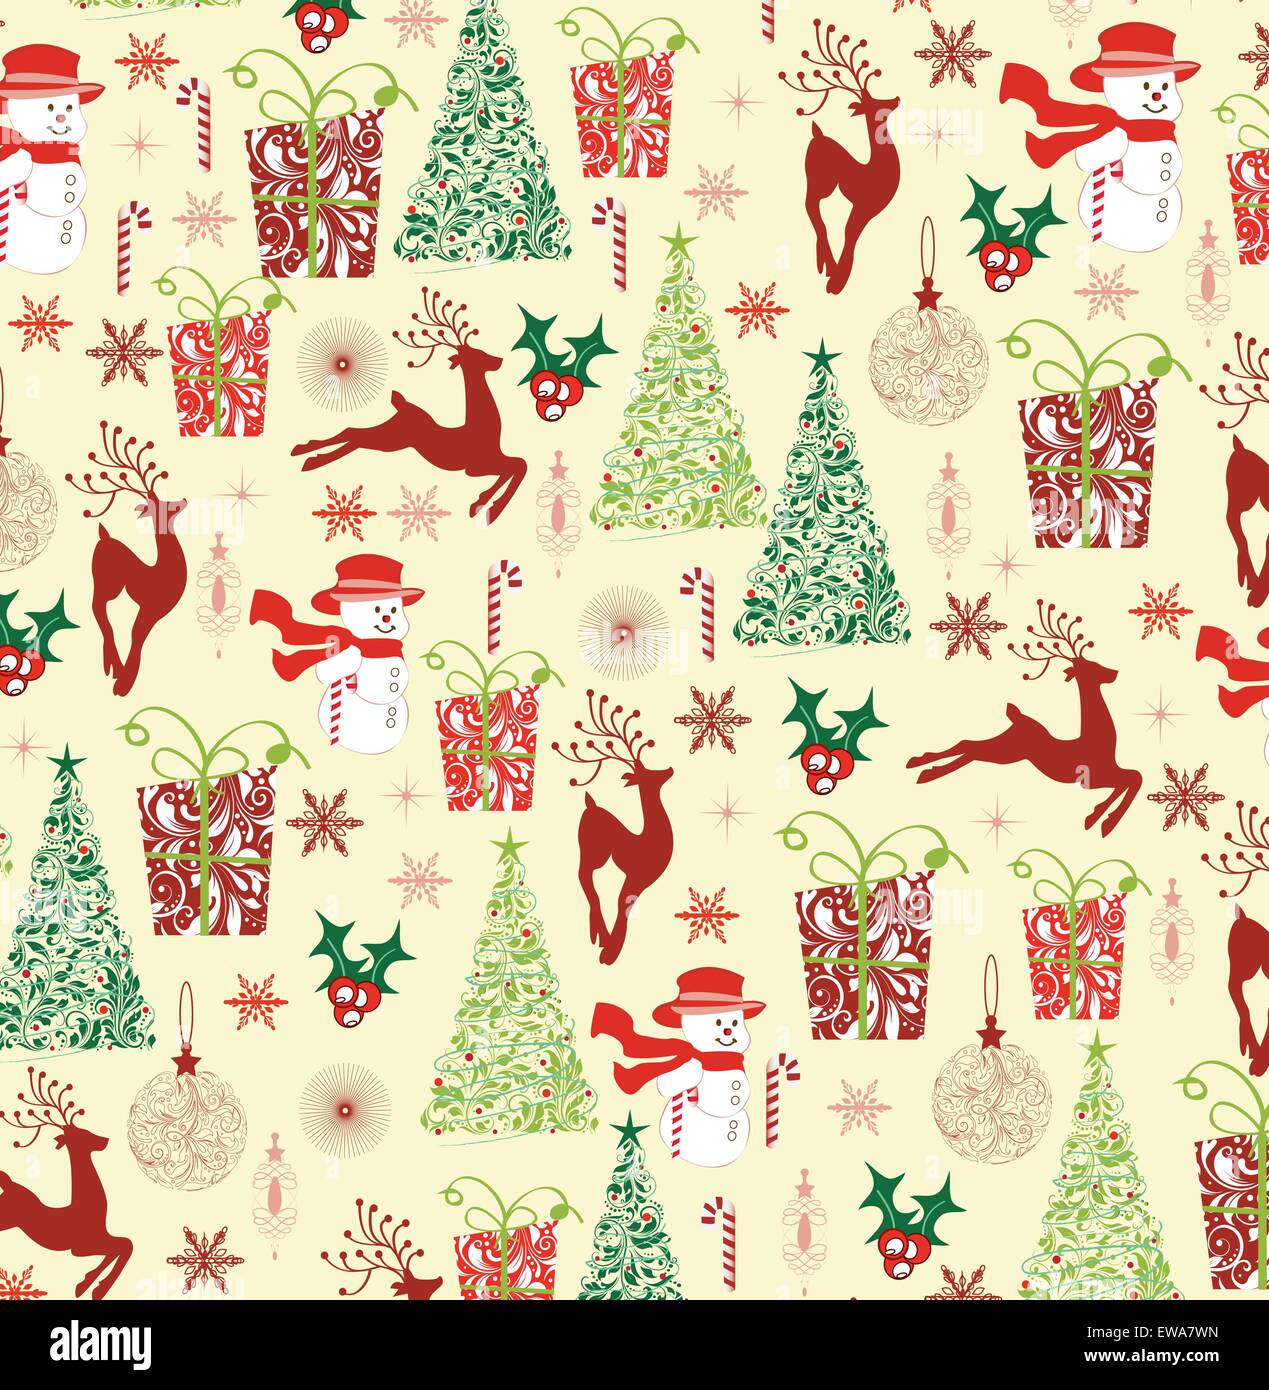 Vintage Weihnachten Hintergrund mit reich verzierten eleganten Retro-abstrakten floralen Design, Schneemann Schneeflocken Weihnachtsstern Rentier Kugeln Stock Vektor